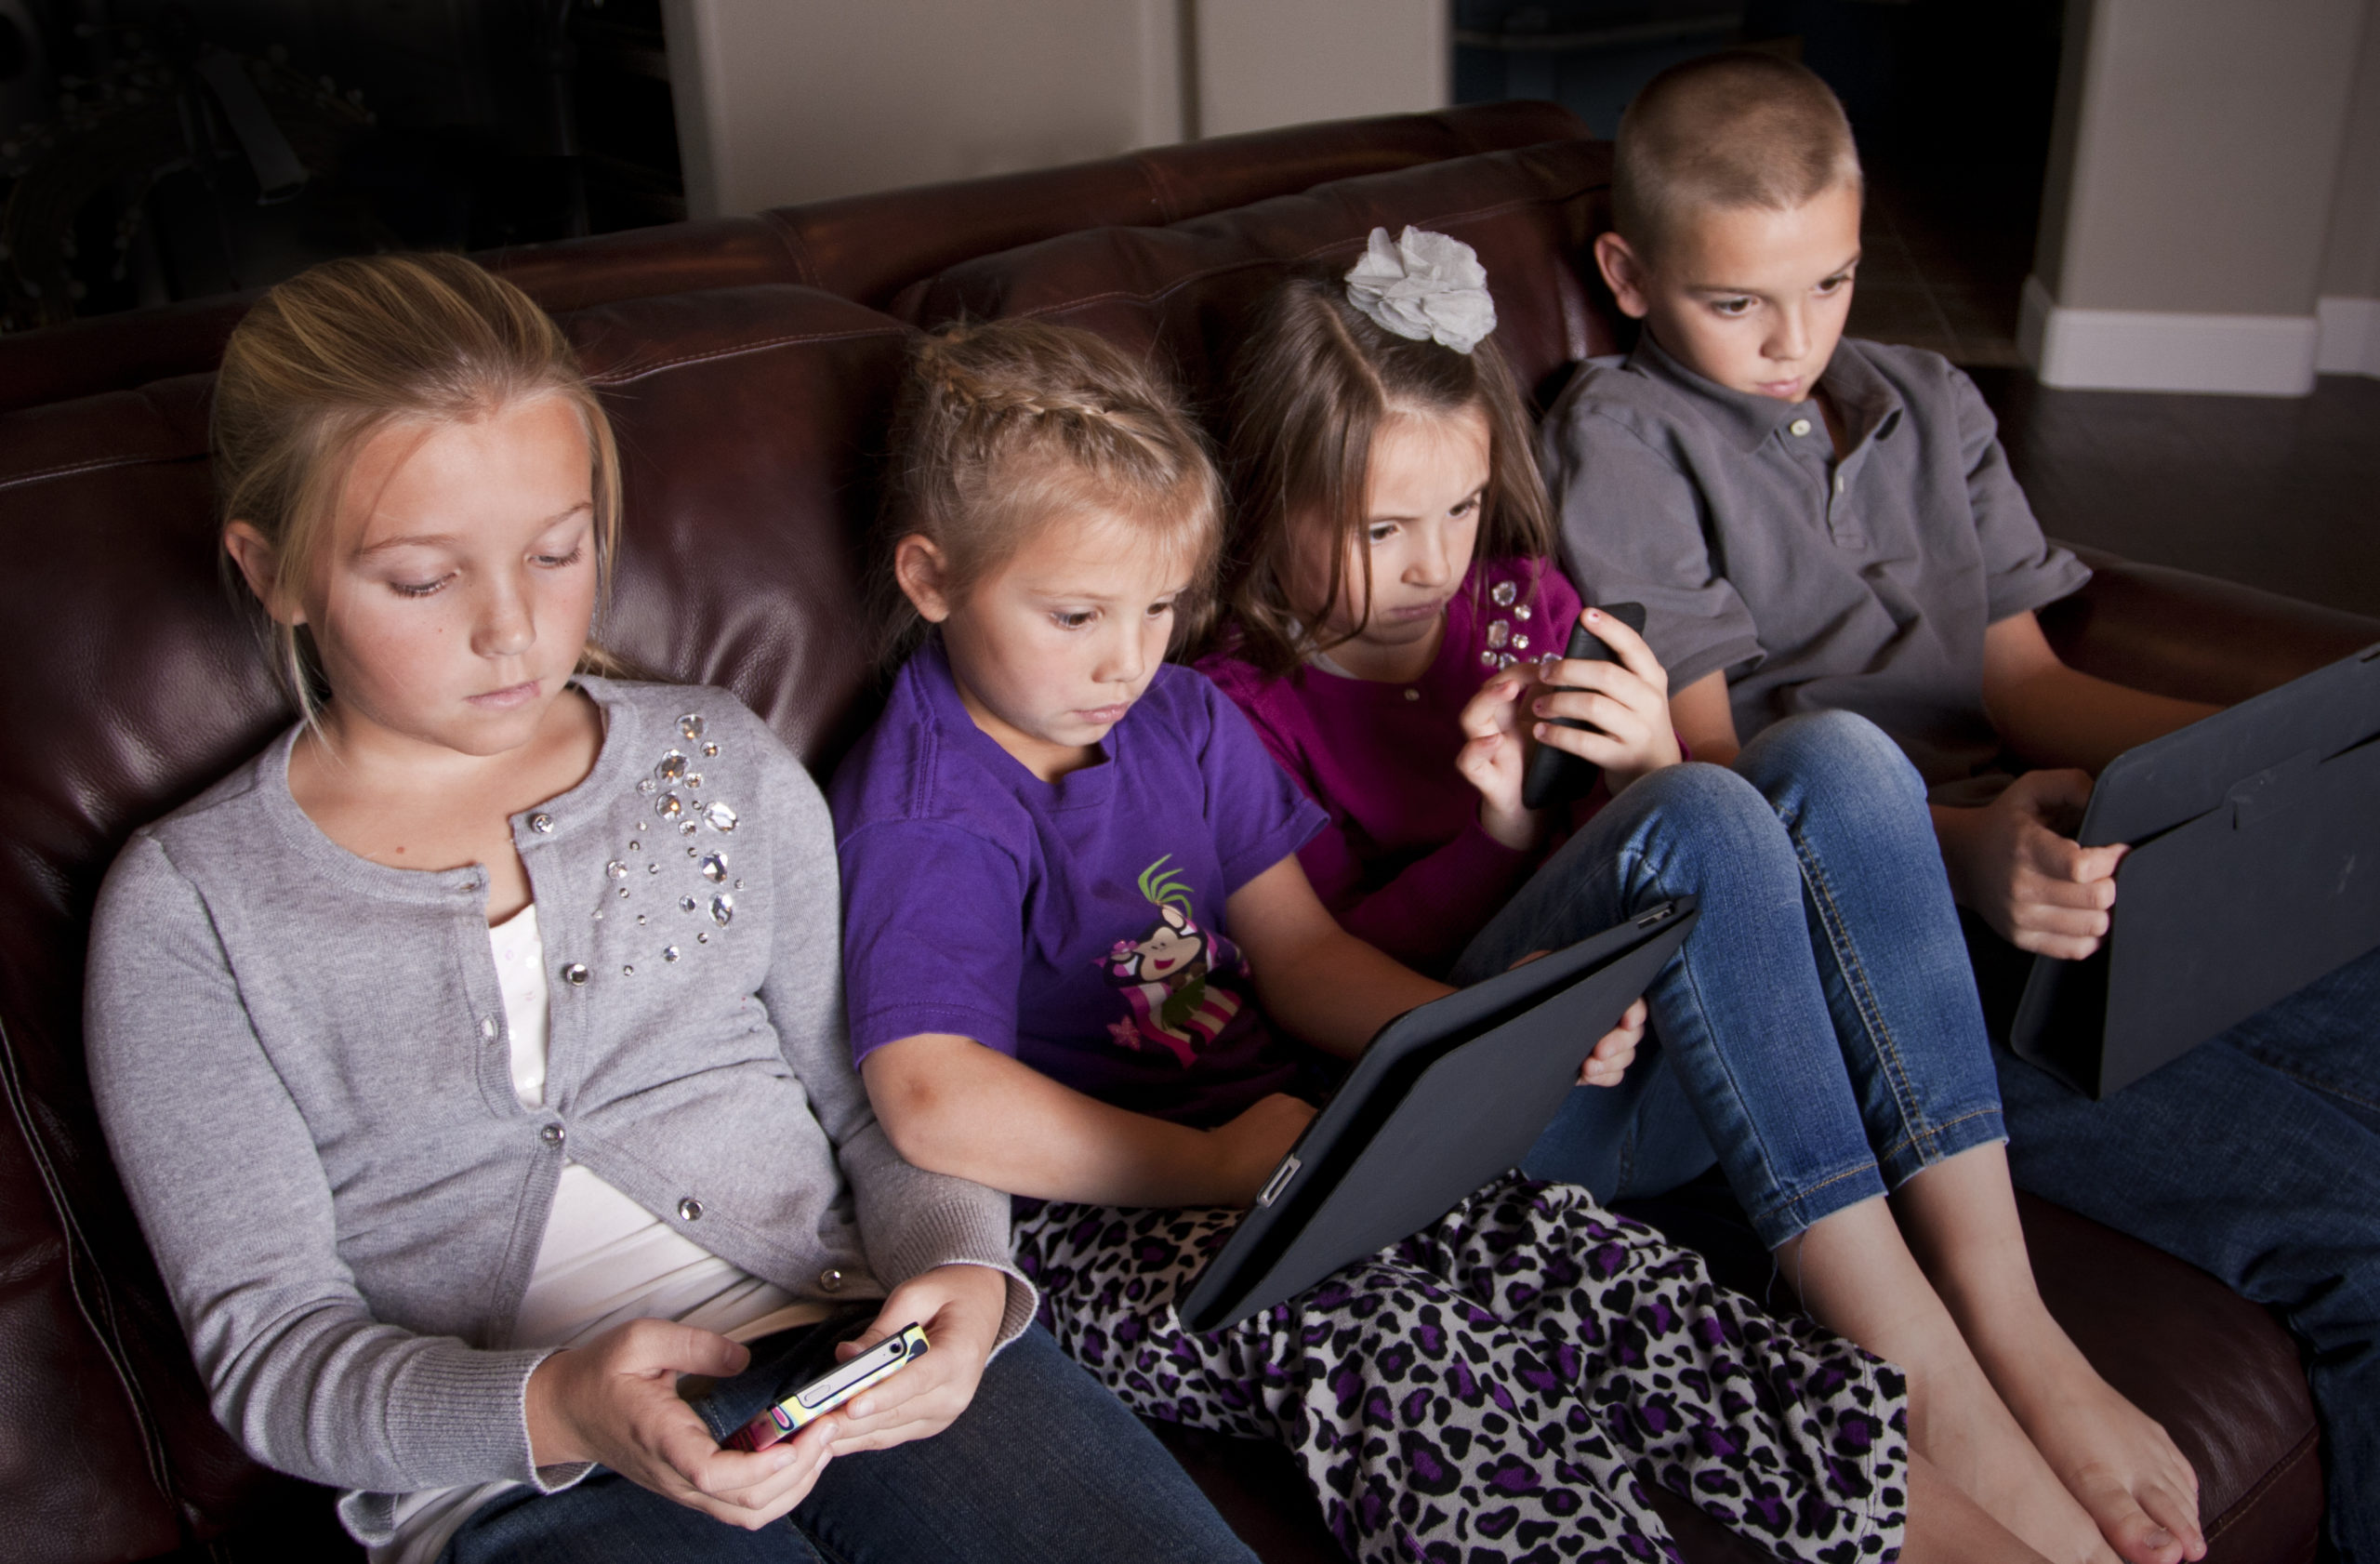 Fire barn på hver sin smartelefon